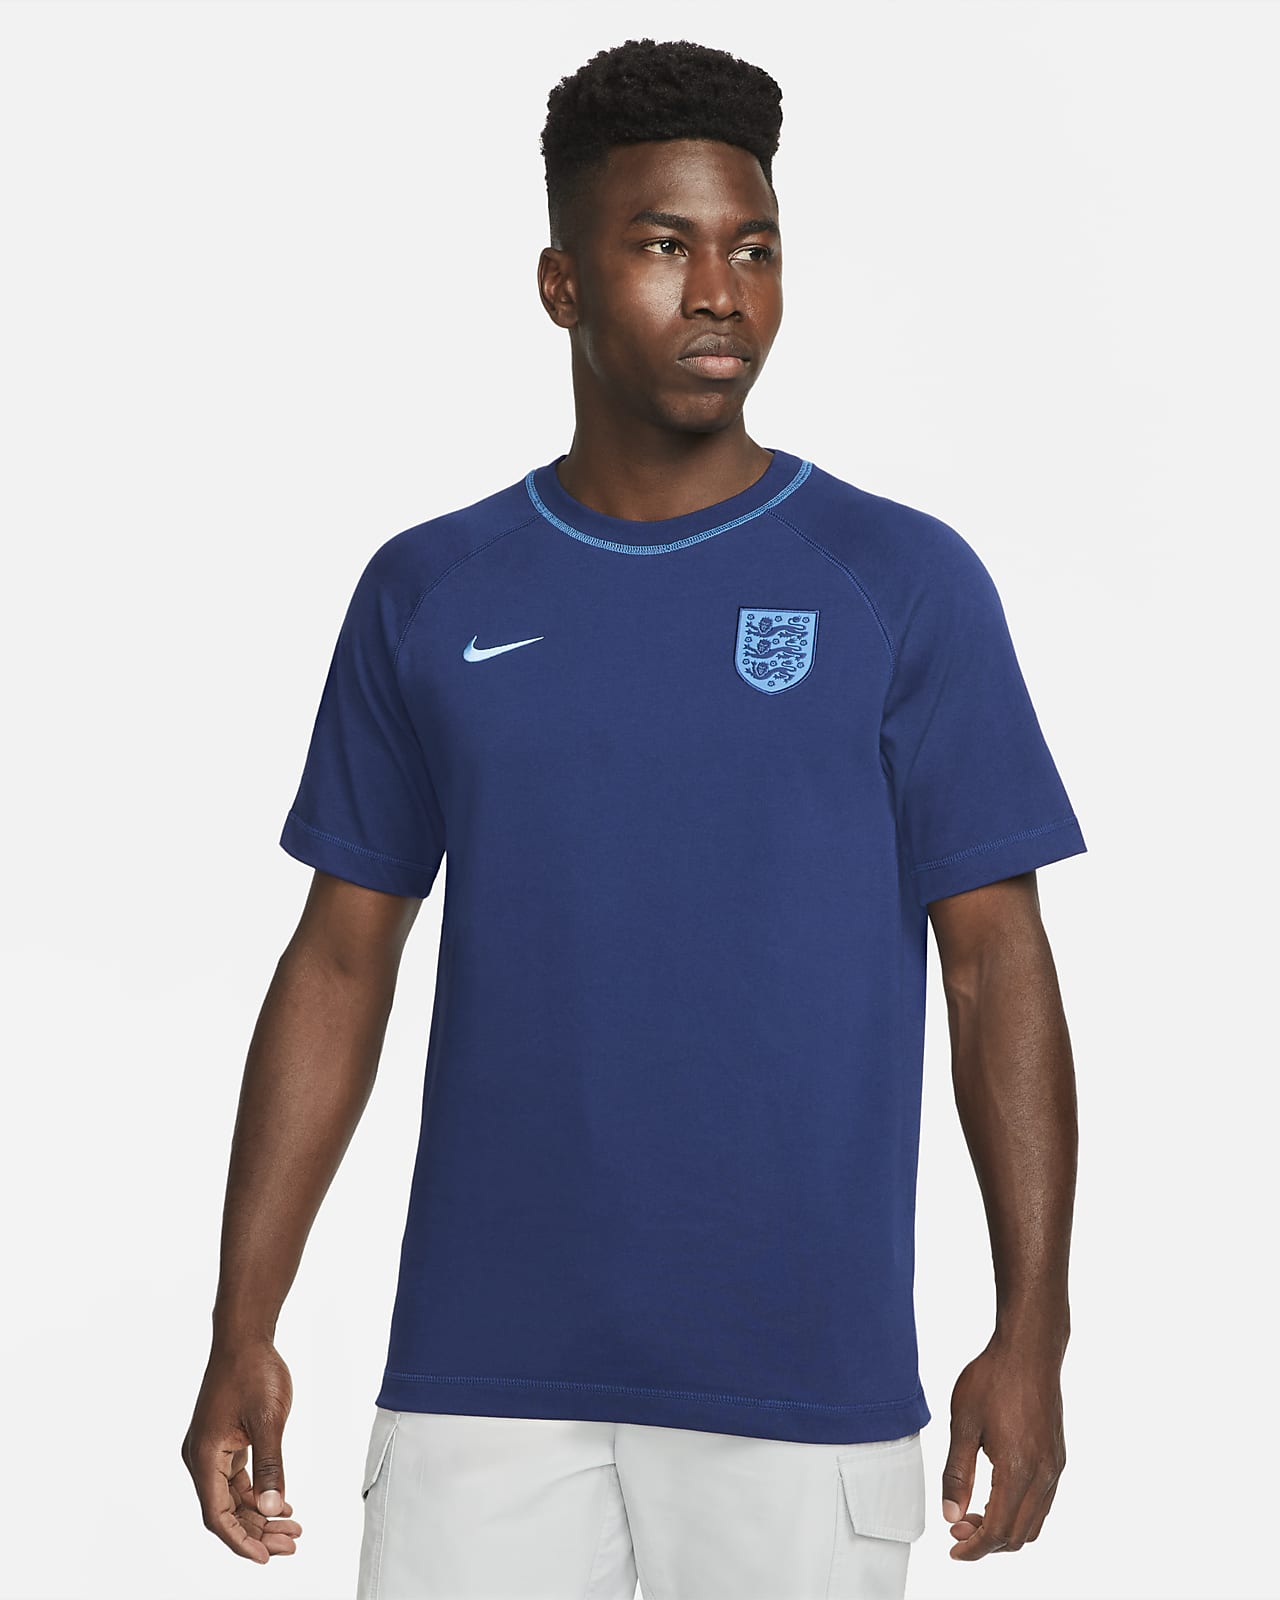 Playera de fútbol Nike para hombre de Inglaterra